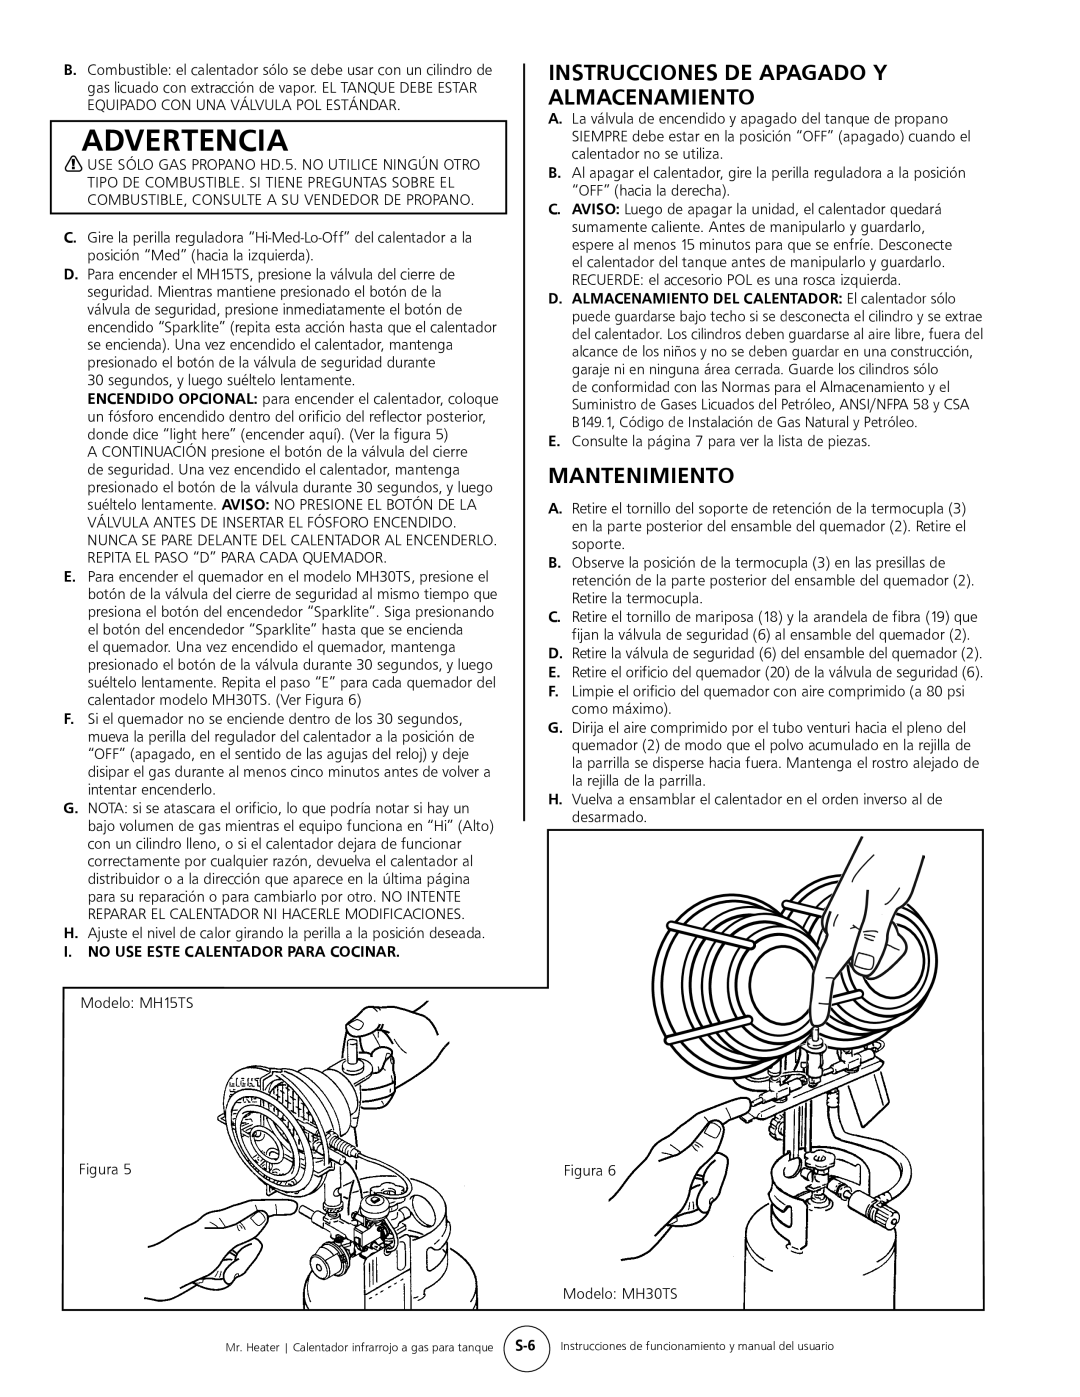 Mr. Heater MH15tS operating instructions Advertencia, Instrucciones De Apagado Y Almacenamiento, Mantenimiento 